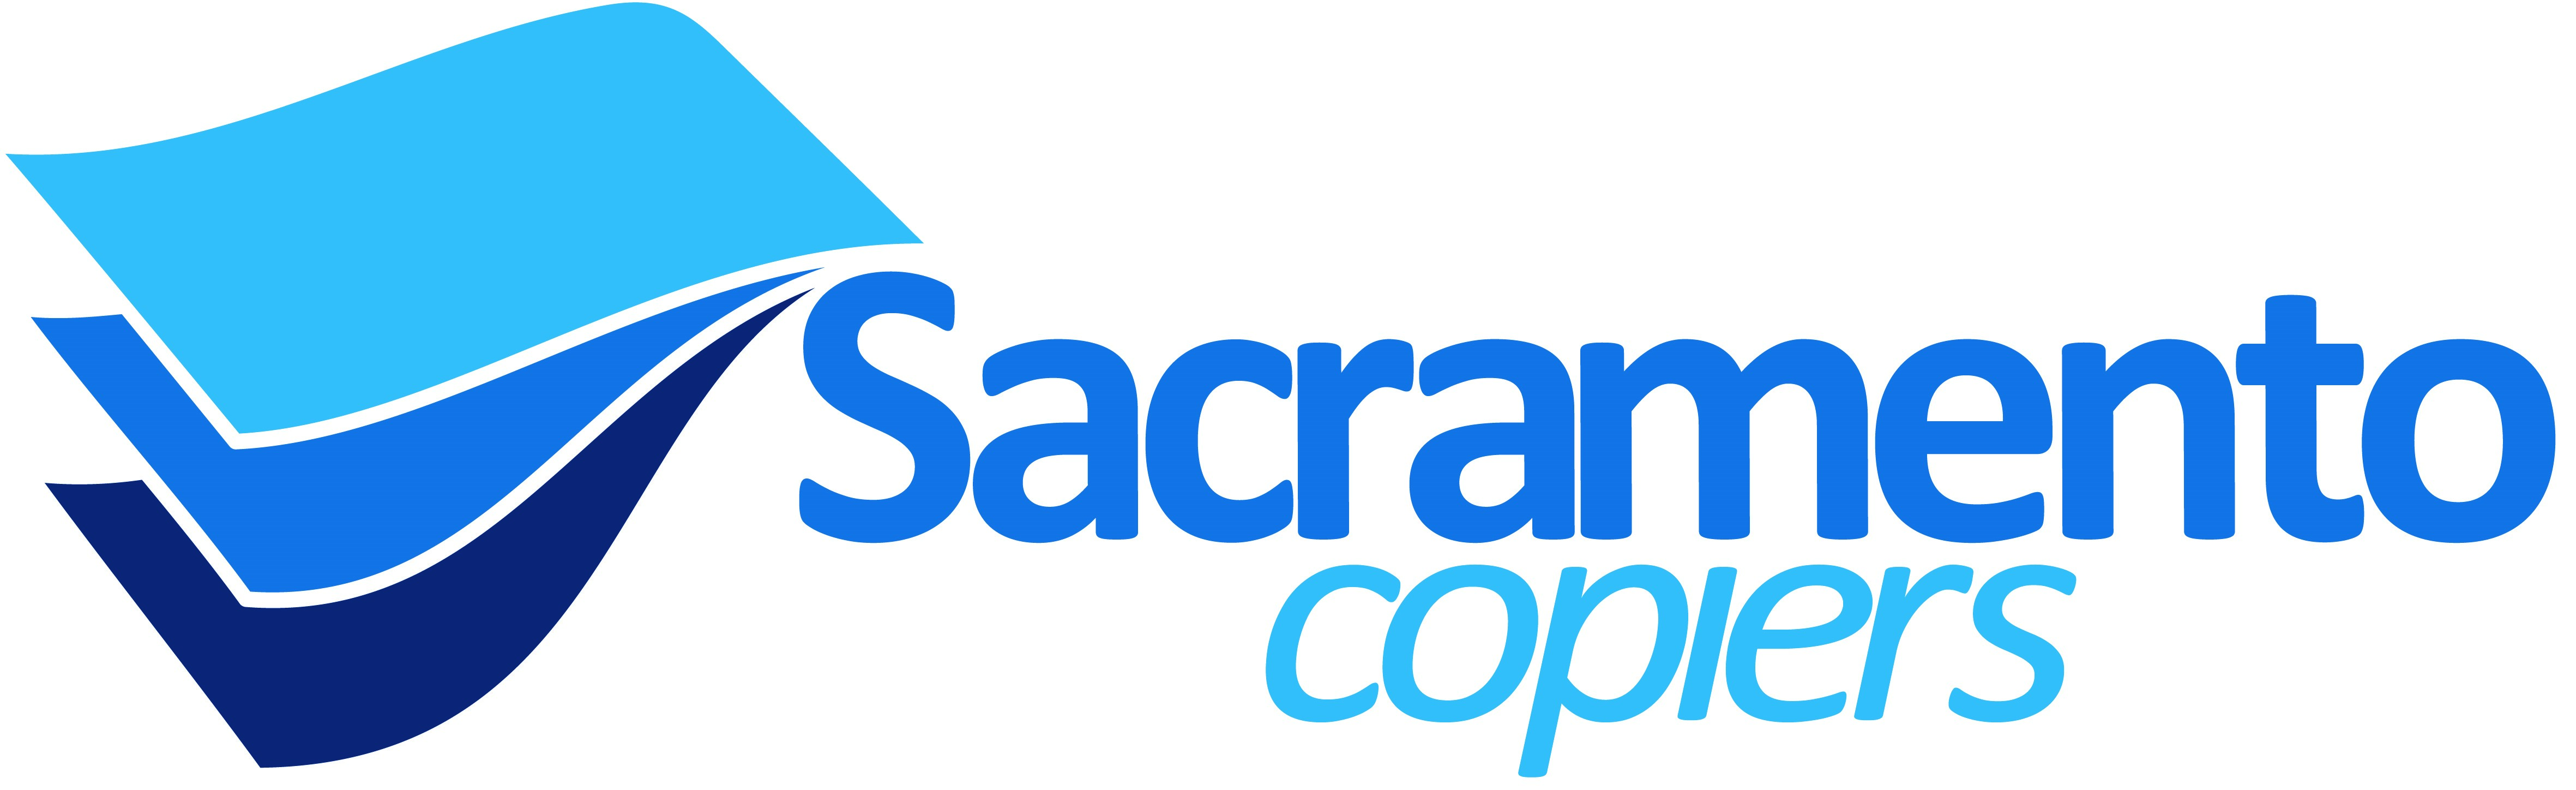 Copier Logo - logo-sacramento-FA-40x12cm - Sacramento Copiers | Copier Leasing ...